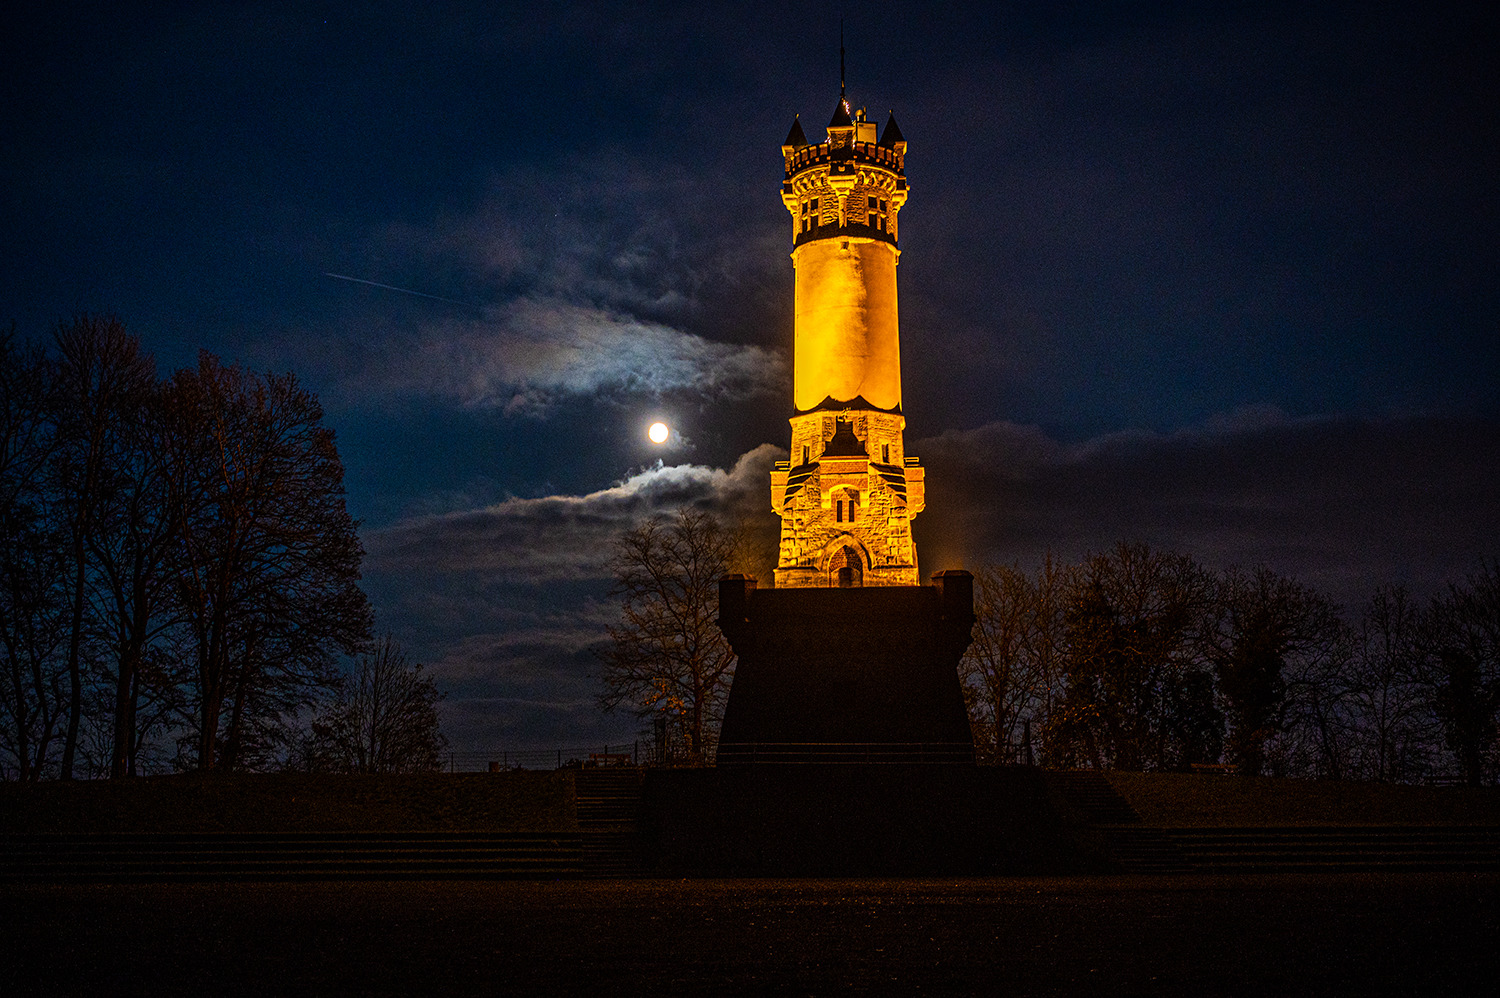 Der Harkortturm in Wetter (Ruhr) bei Nacht